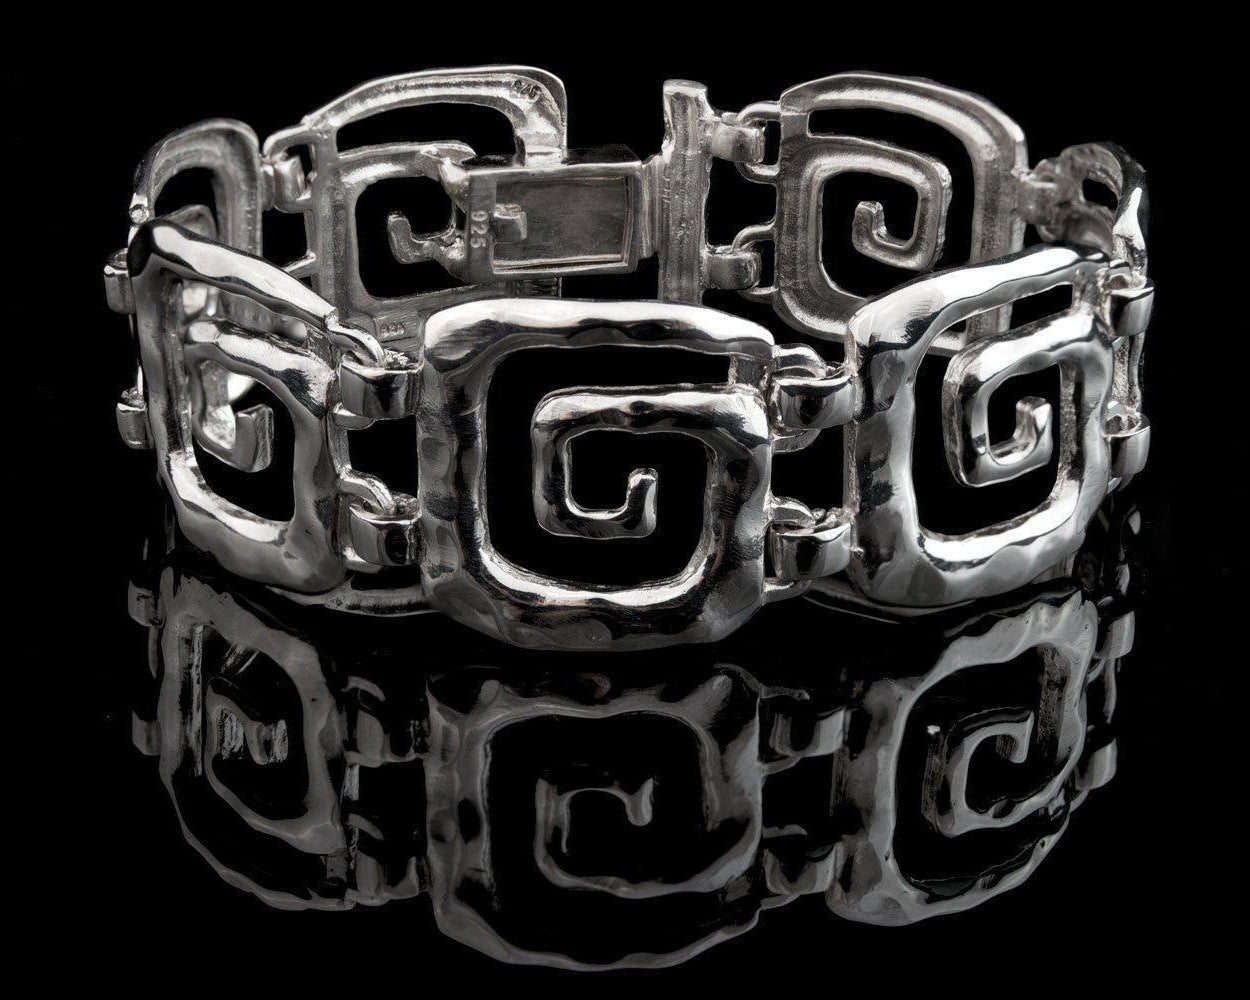 Greek Key Meander Bracelet in Sterling Silver (B-60)